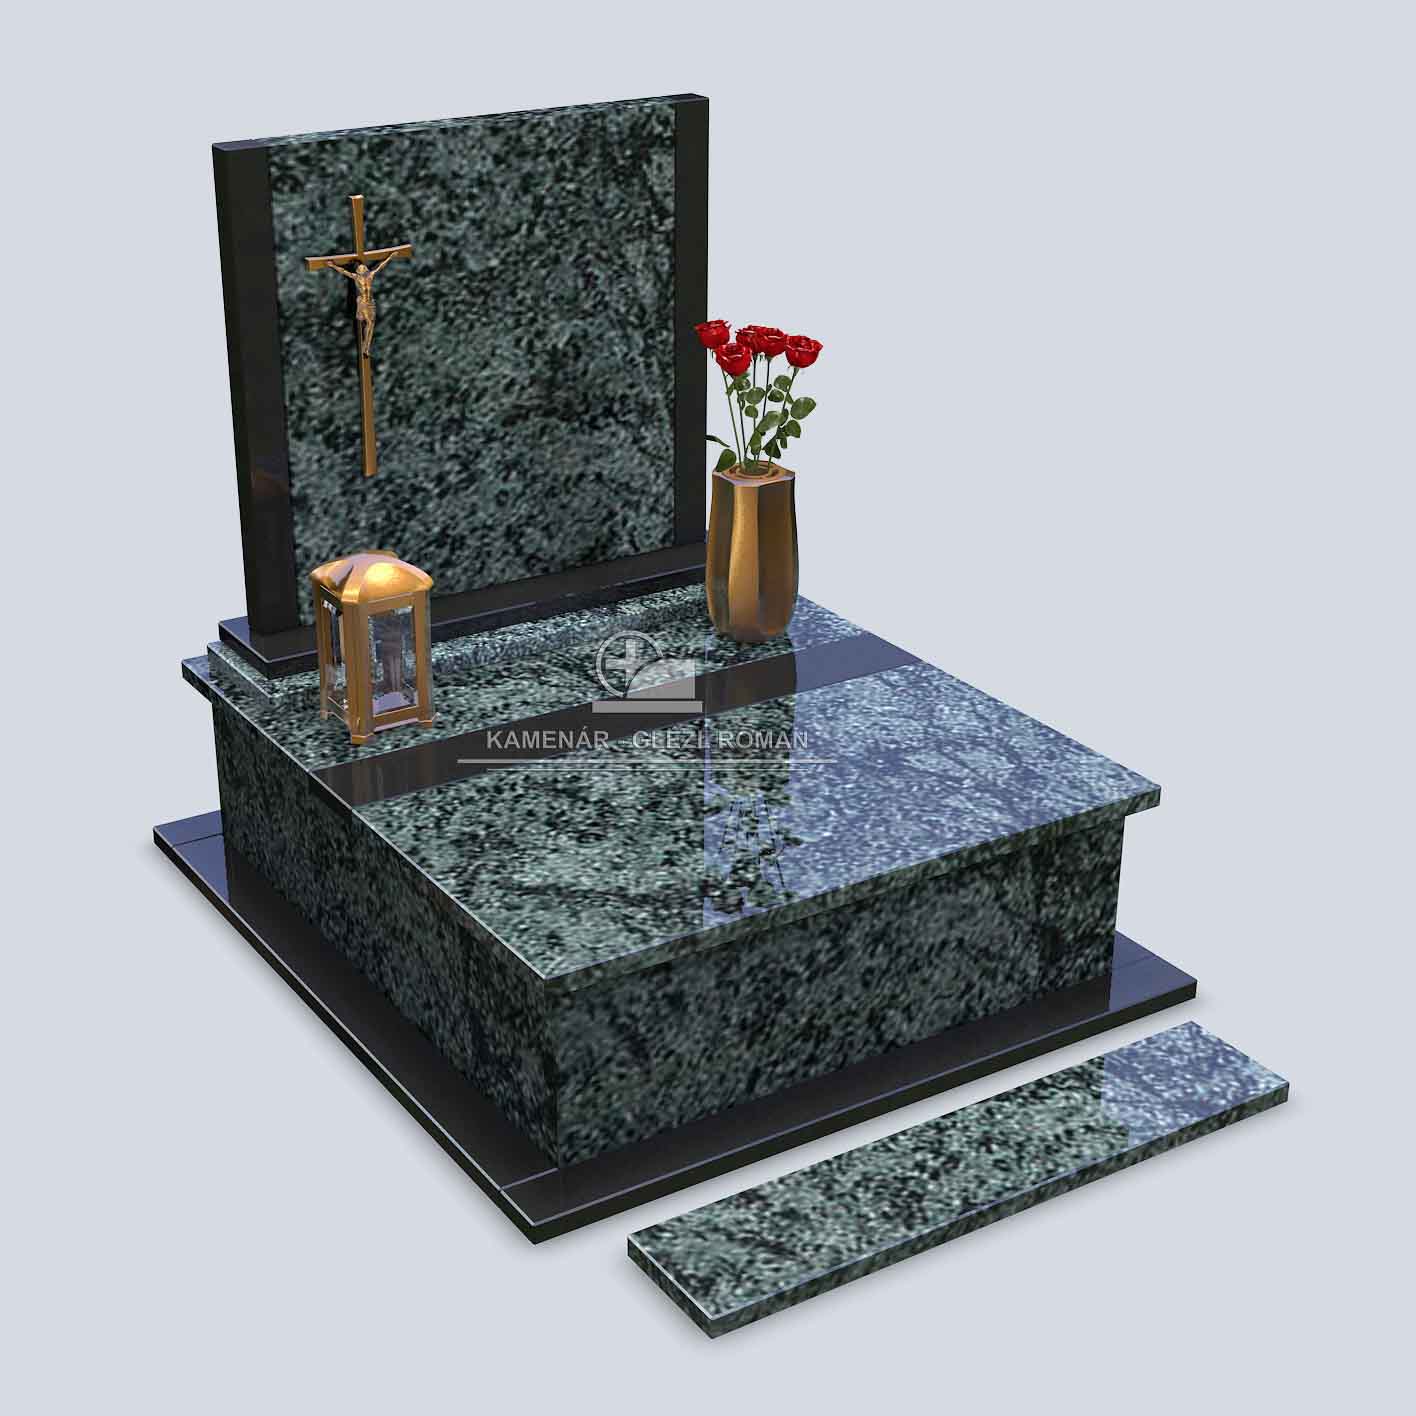 Urnový pomník z čiernozelenej žuly s bronzovým krížom, svietnikom a vázou s kvetmi